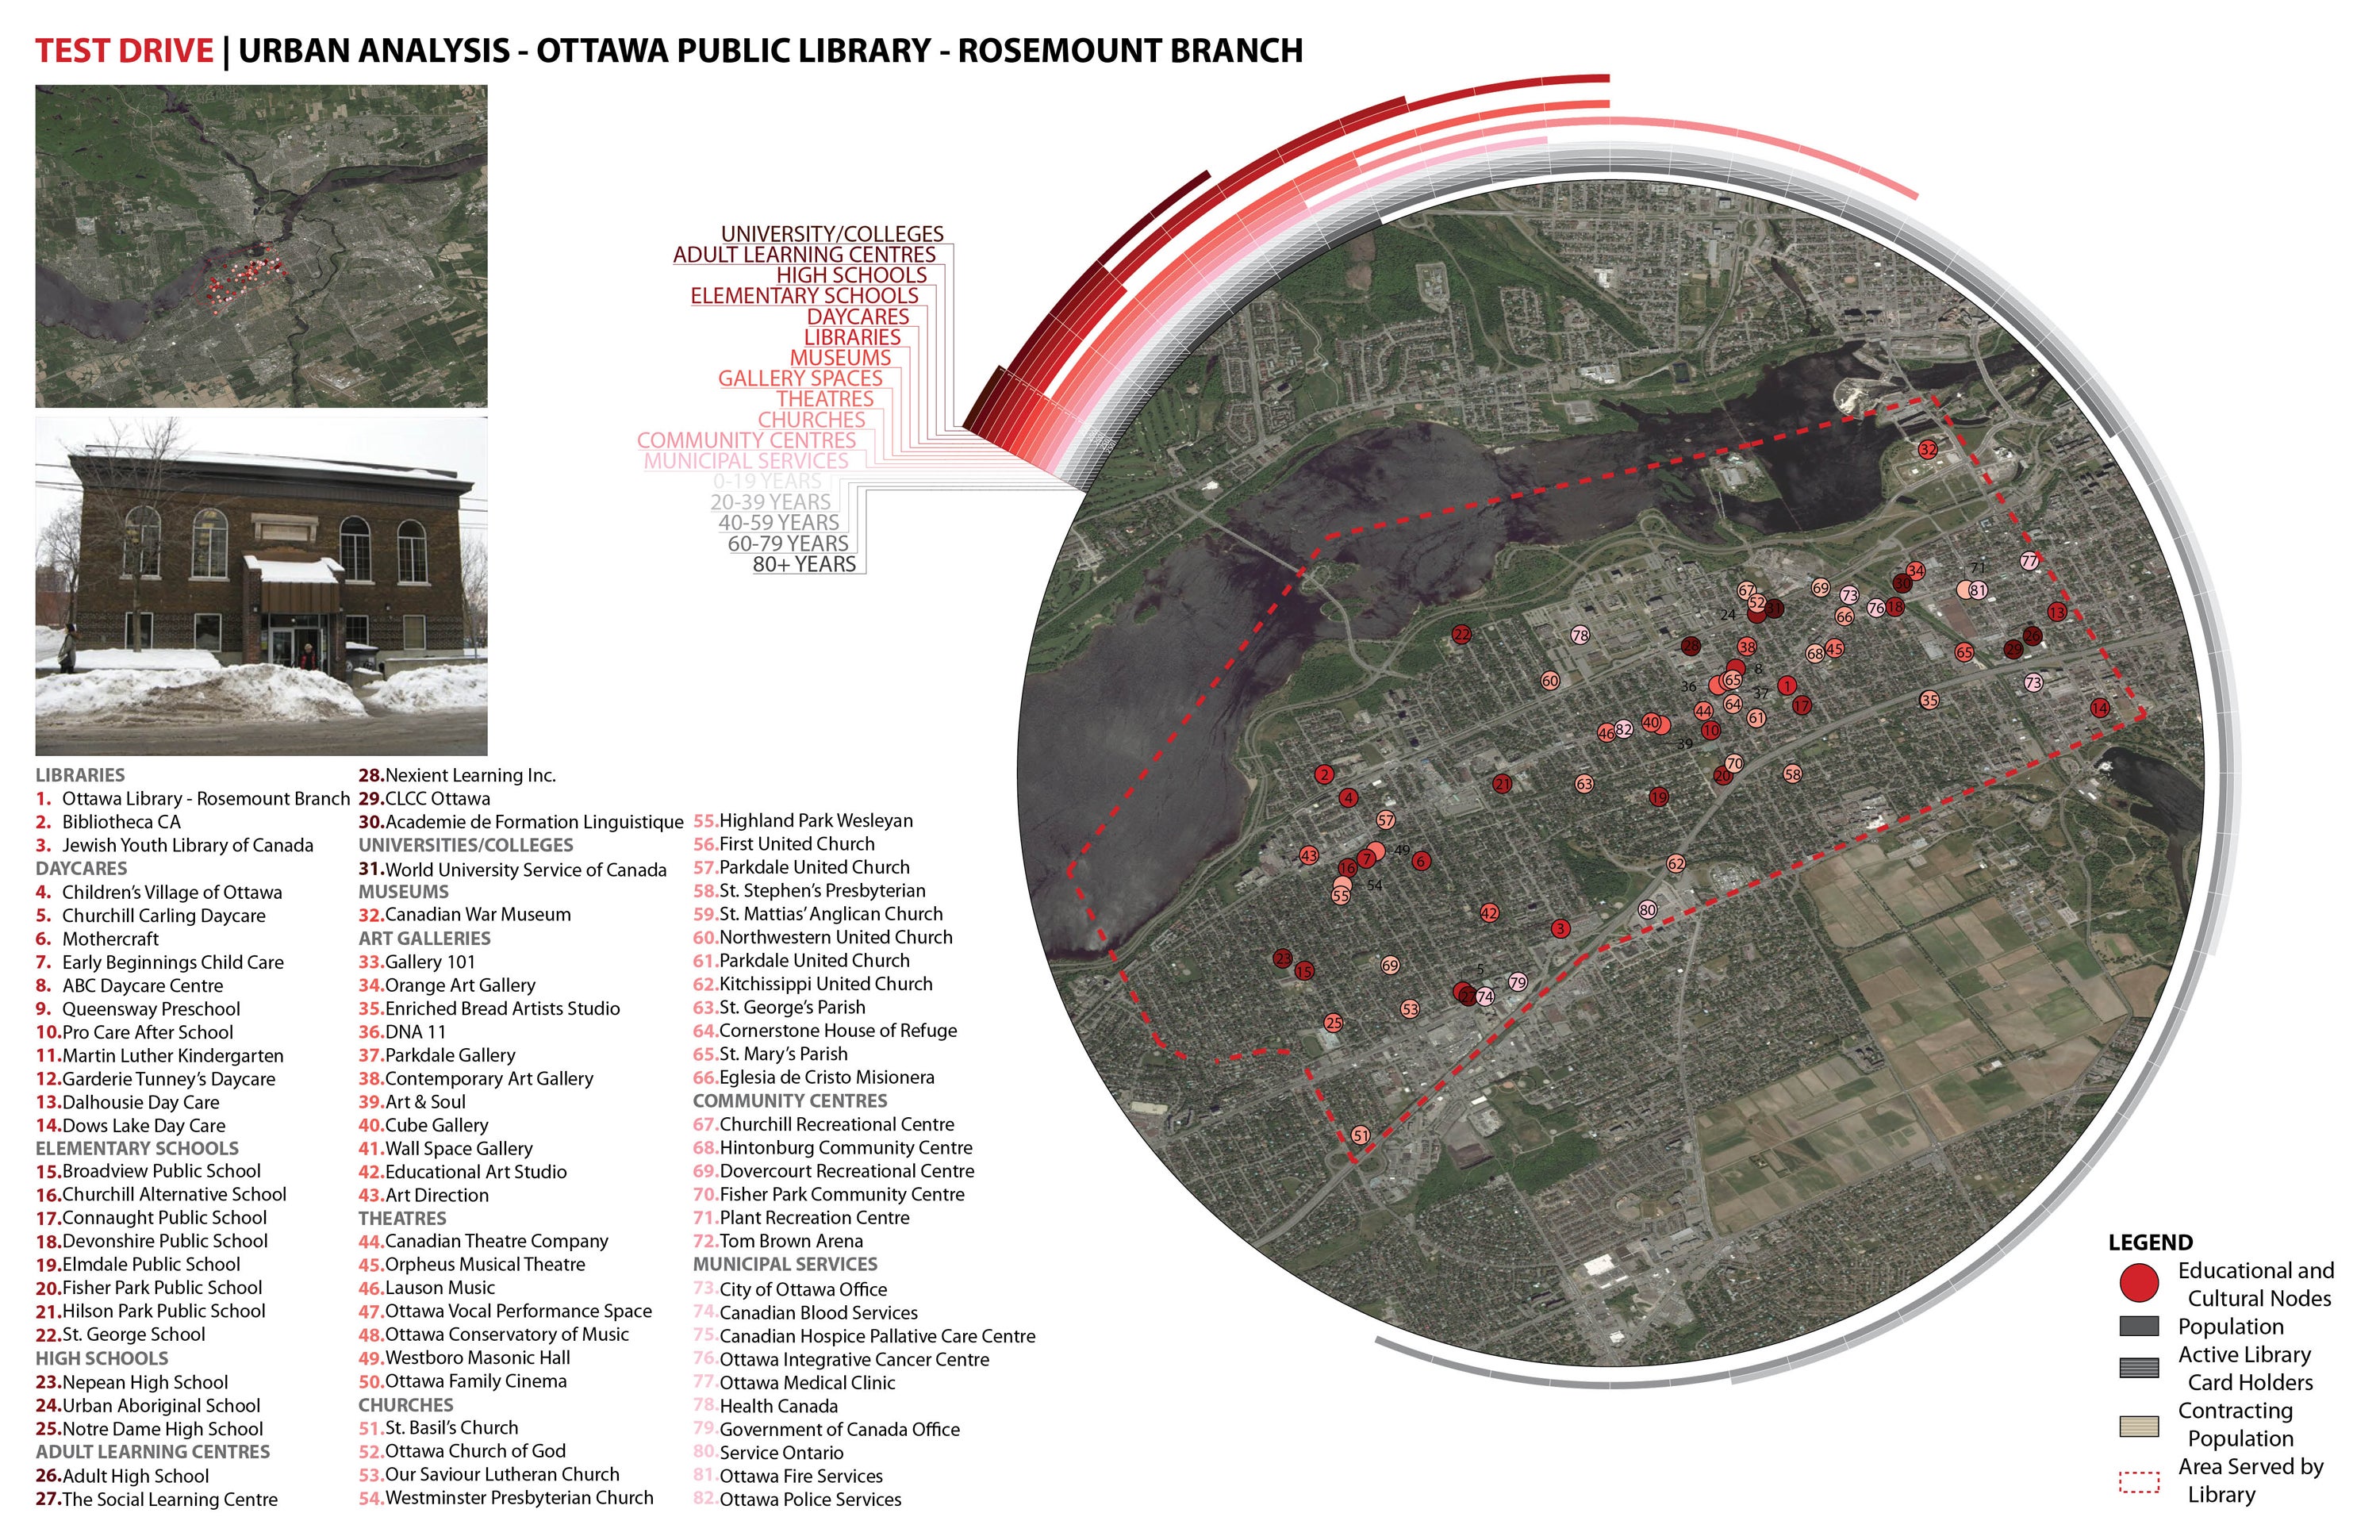 Urban Site Analysis of the Ottawa Public Library